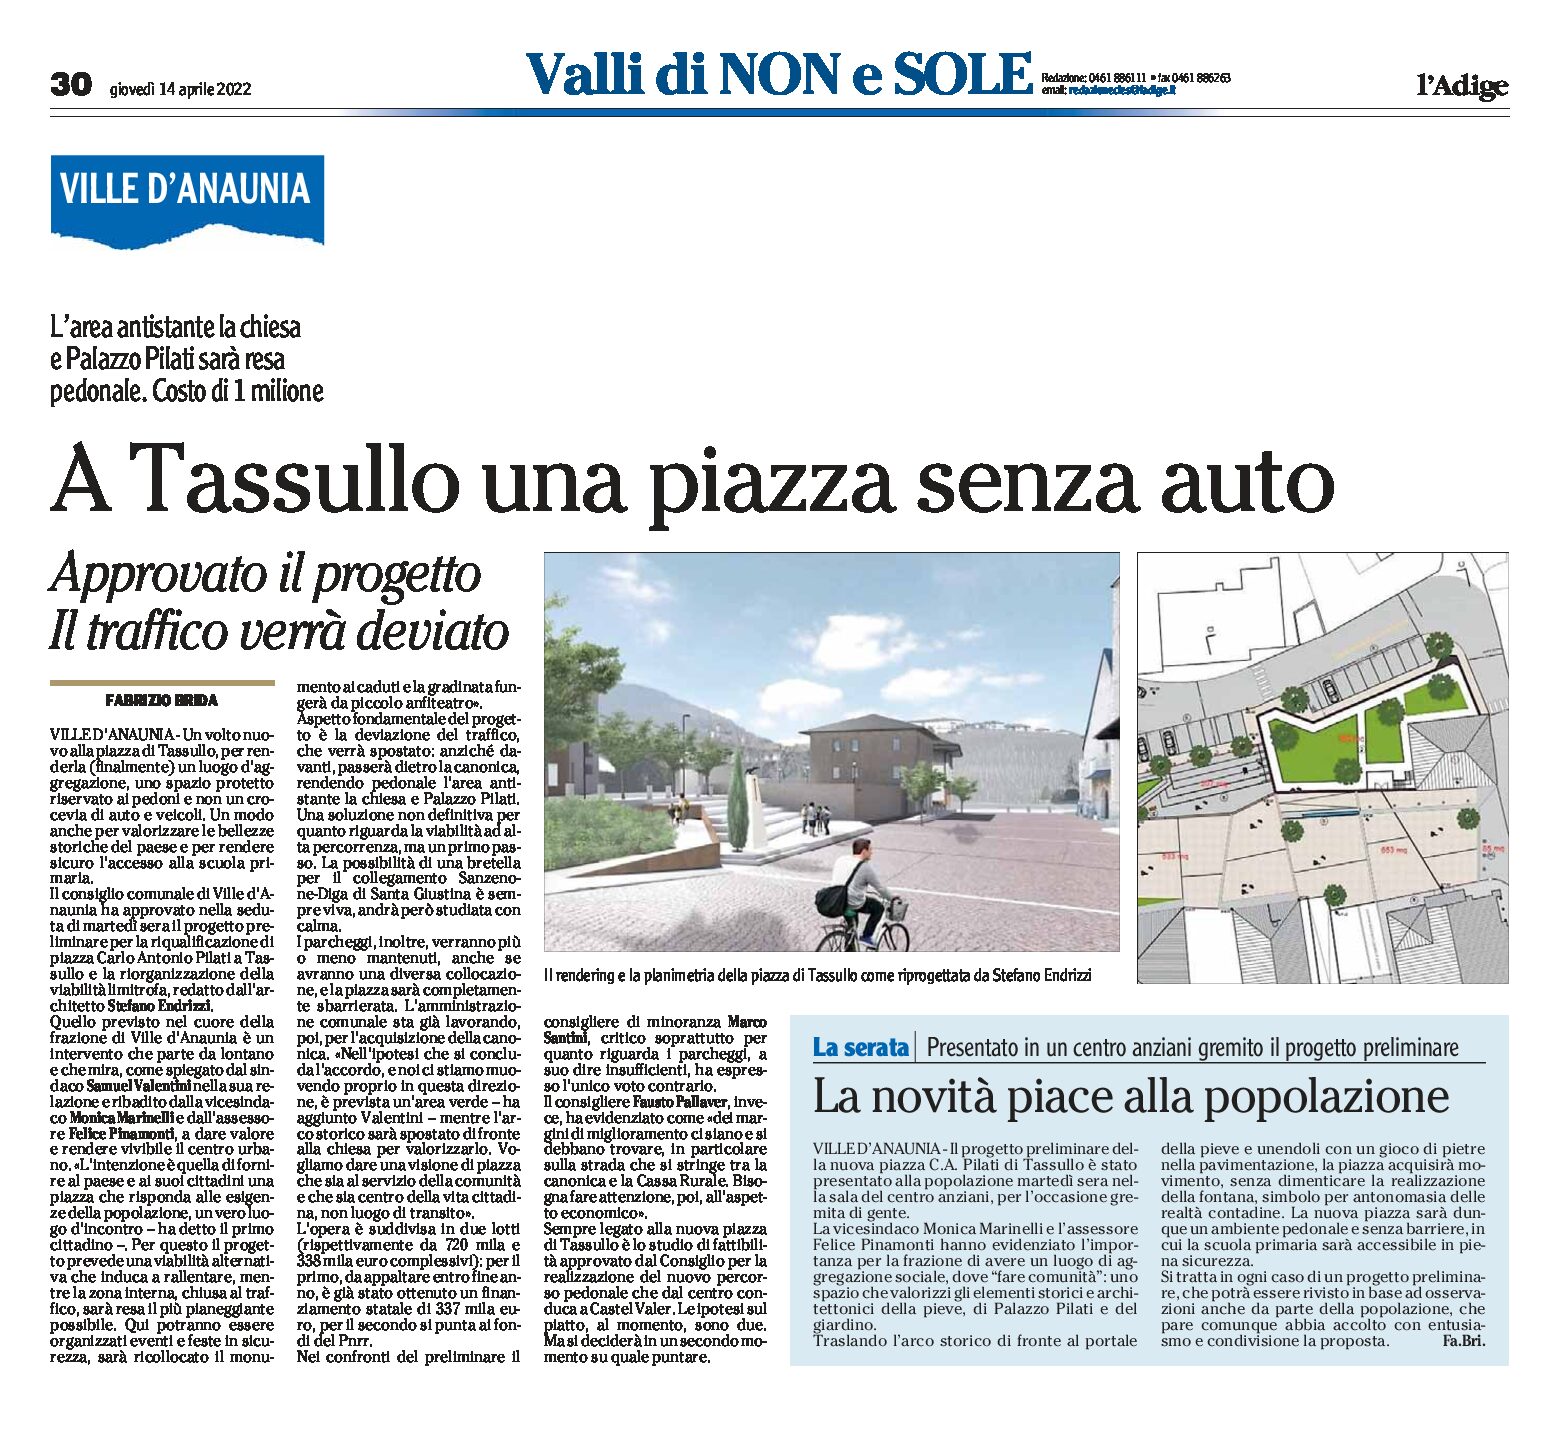 Tassullo: riqualificazione di piazza Pilati, senza auto